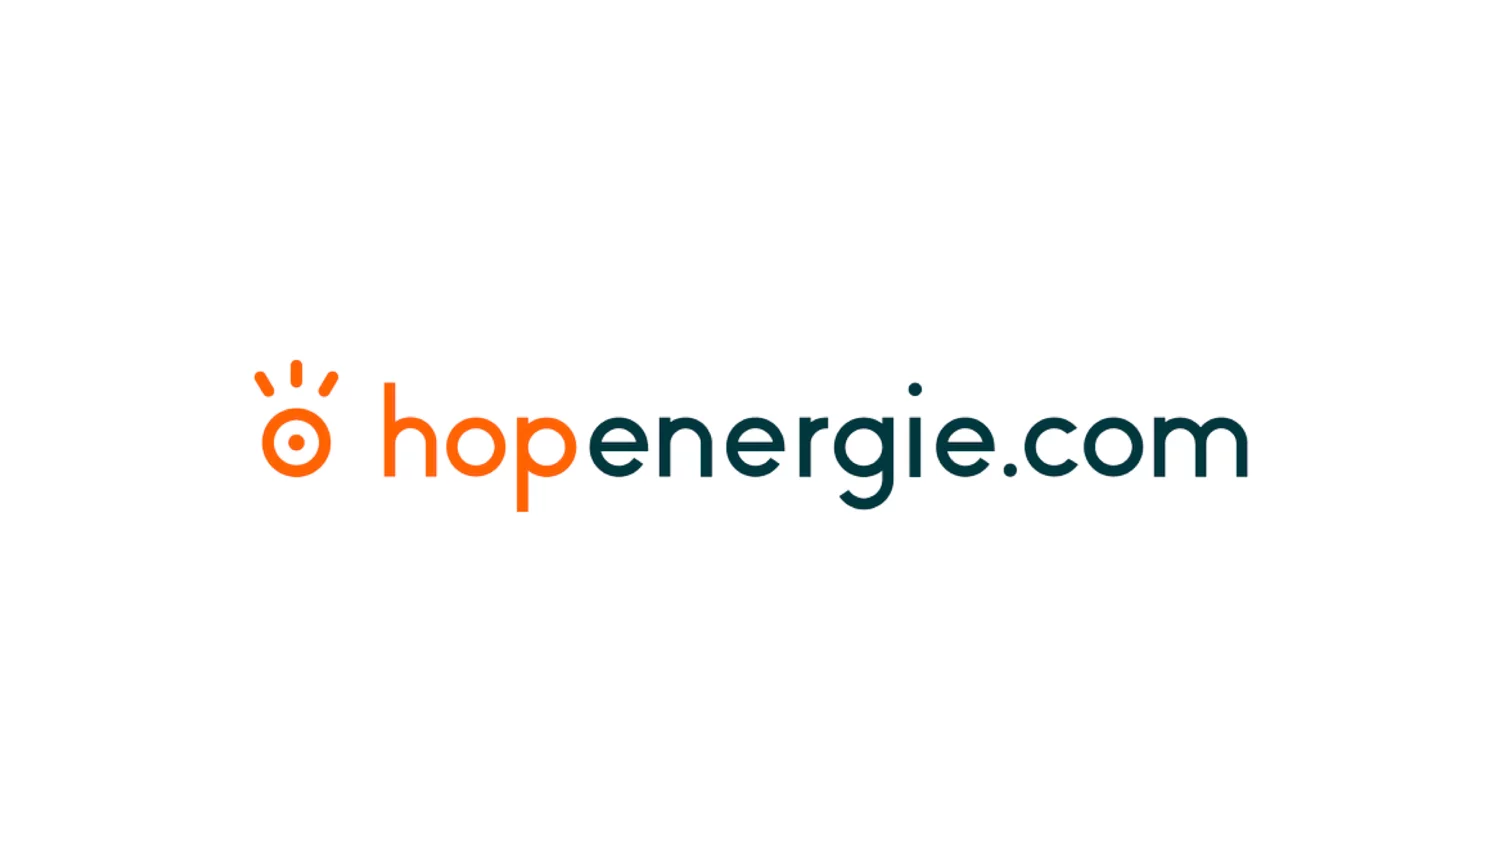 Logotype de Hopenergie.com. Nom Hopenergie.com aposé à un signe minimaliste rappelant un oeil